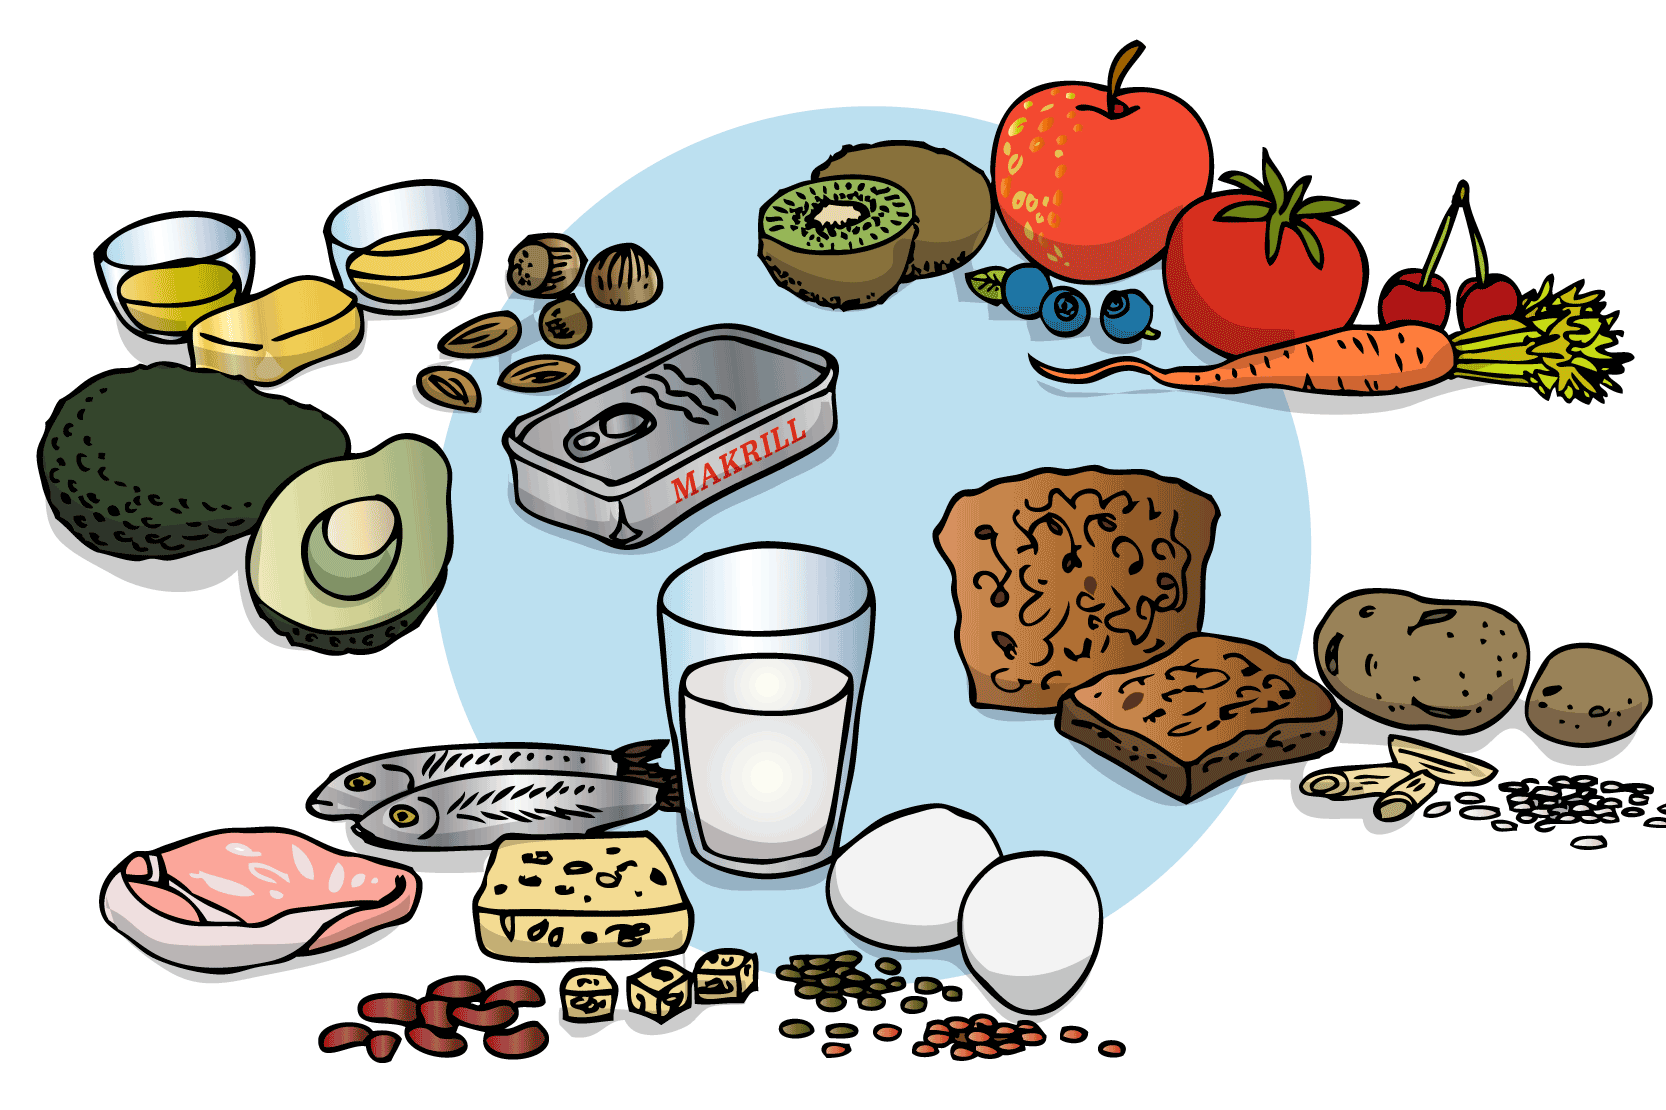 Avokado, olja, nötter, makrill, kiwi, morot, tomat, rädisor, bröd, potatis, ost, bönor, linser, ägg, mjölk och fler exempel på mat. Illustration.